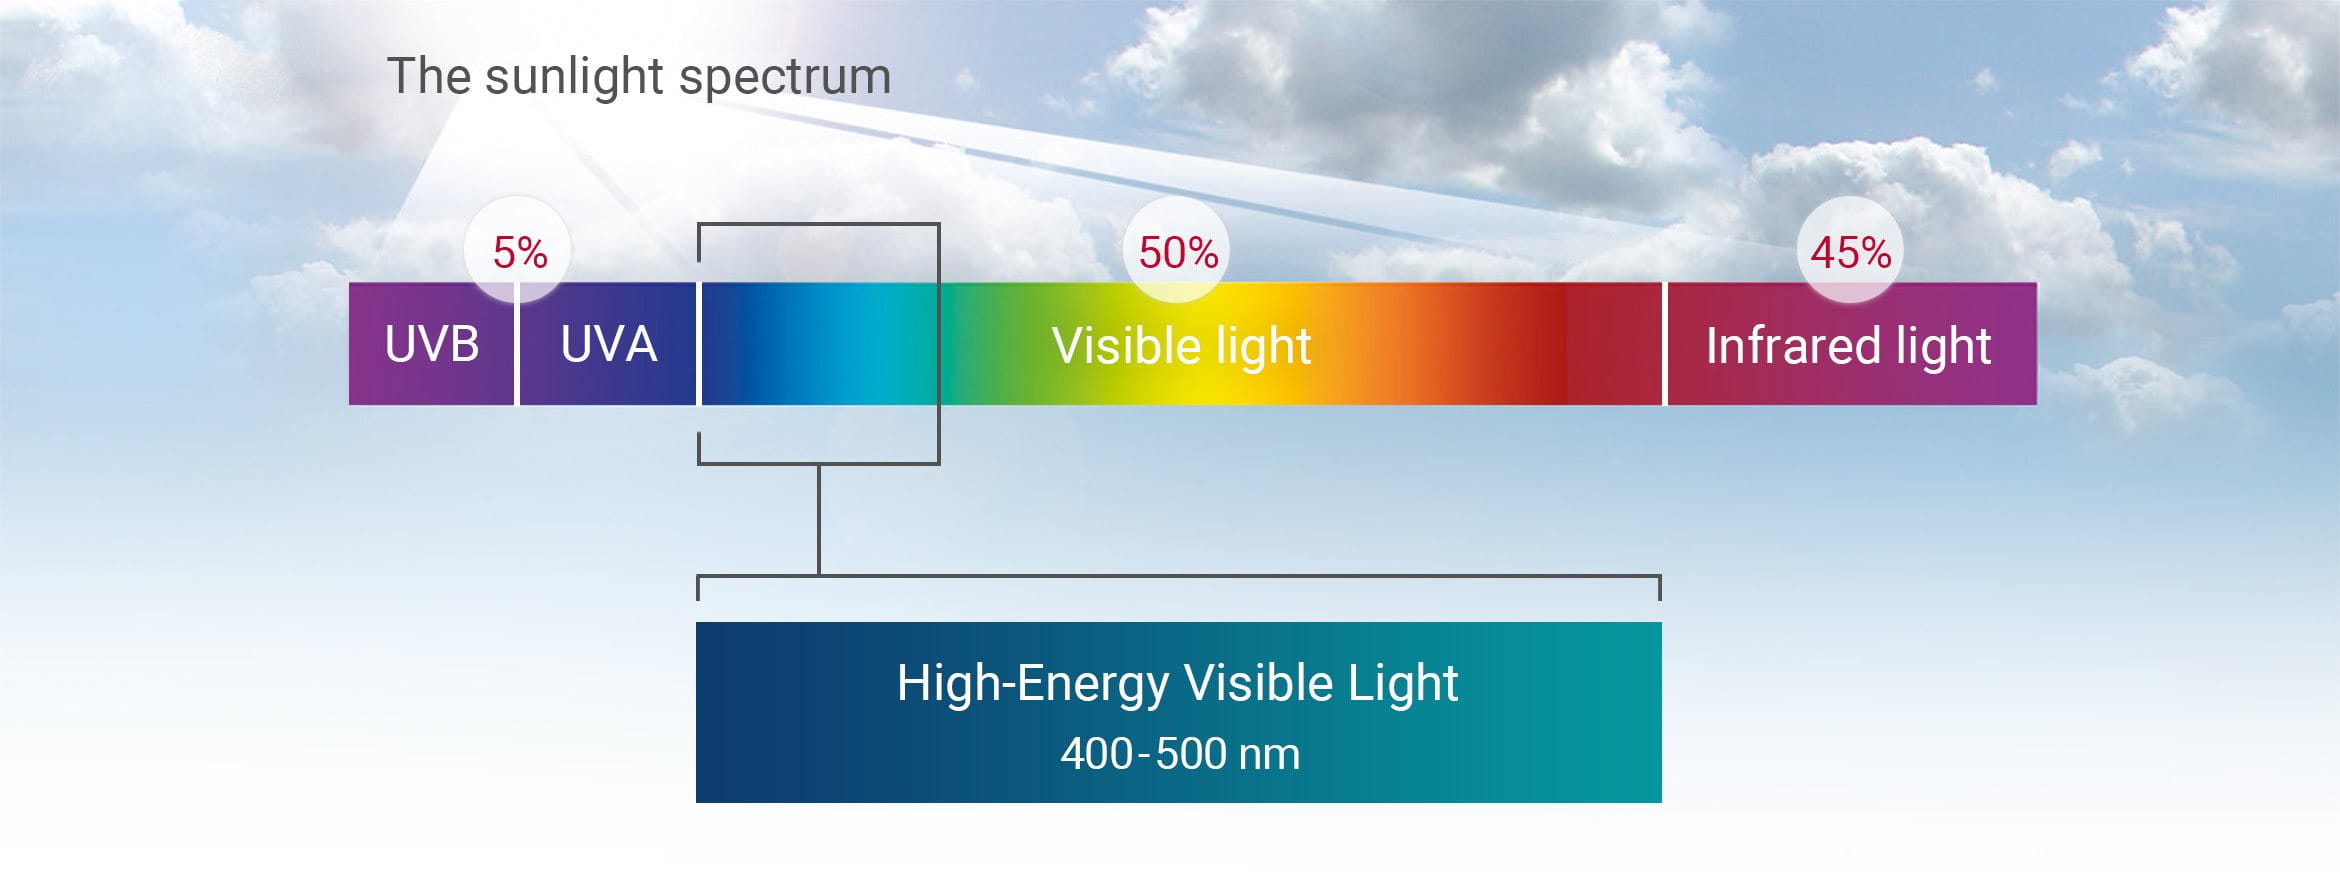 La lumière HEVIS se situe dans la bande allant du violet au bleu du spectre visible.